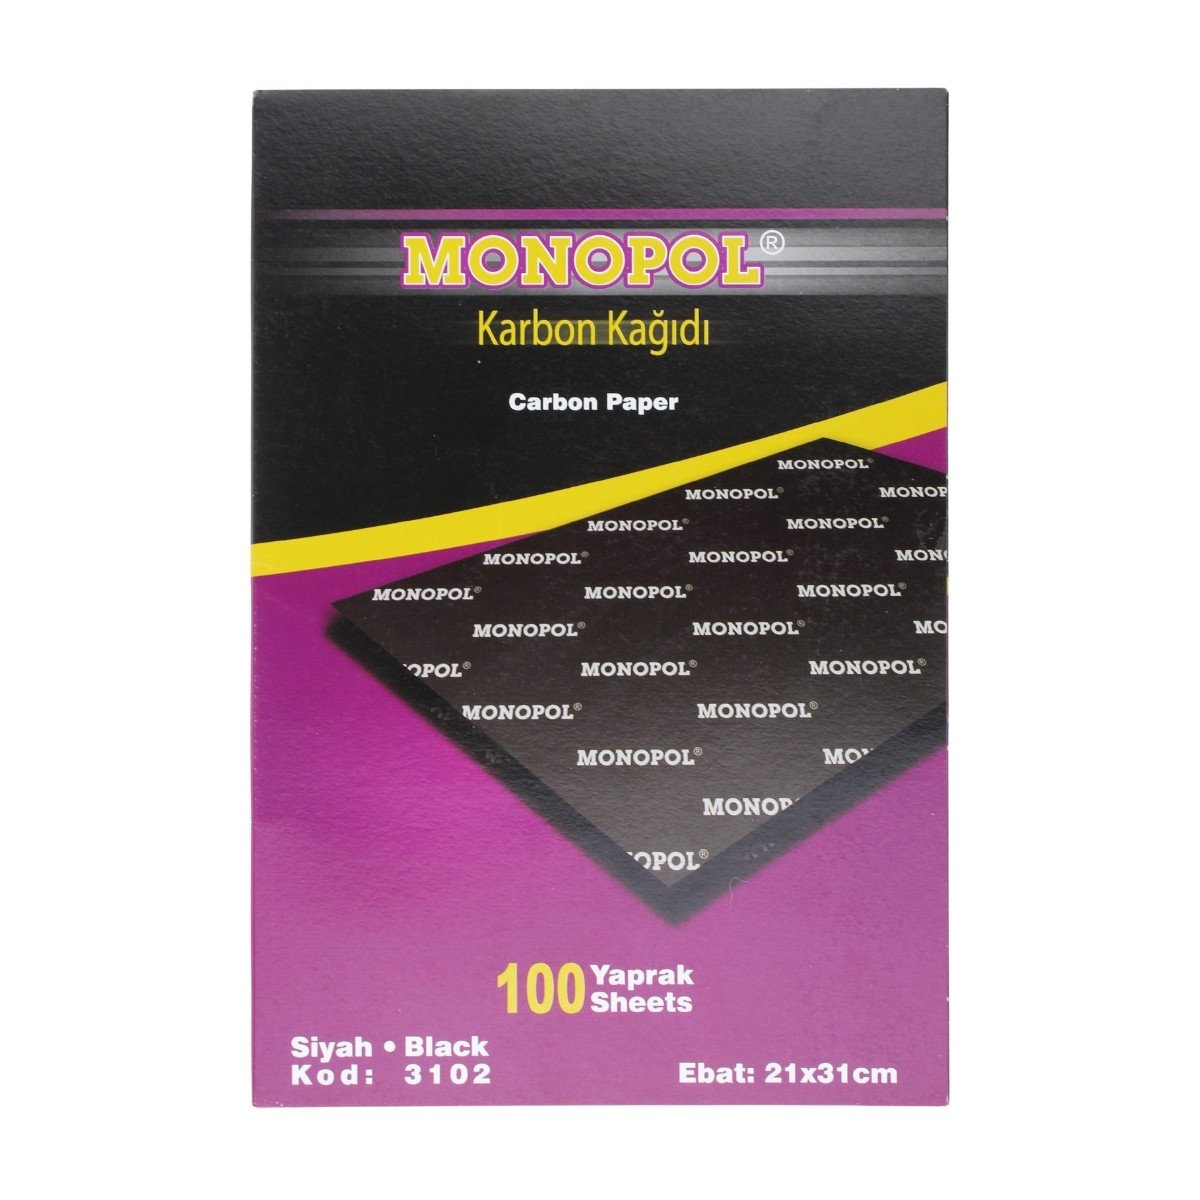 Monopol Karbon Kağıdı 21x31cm Siyah 100lü